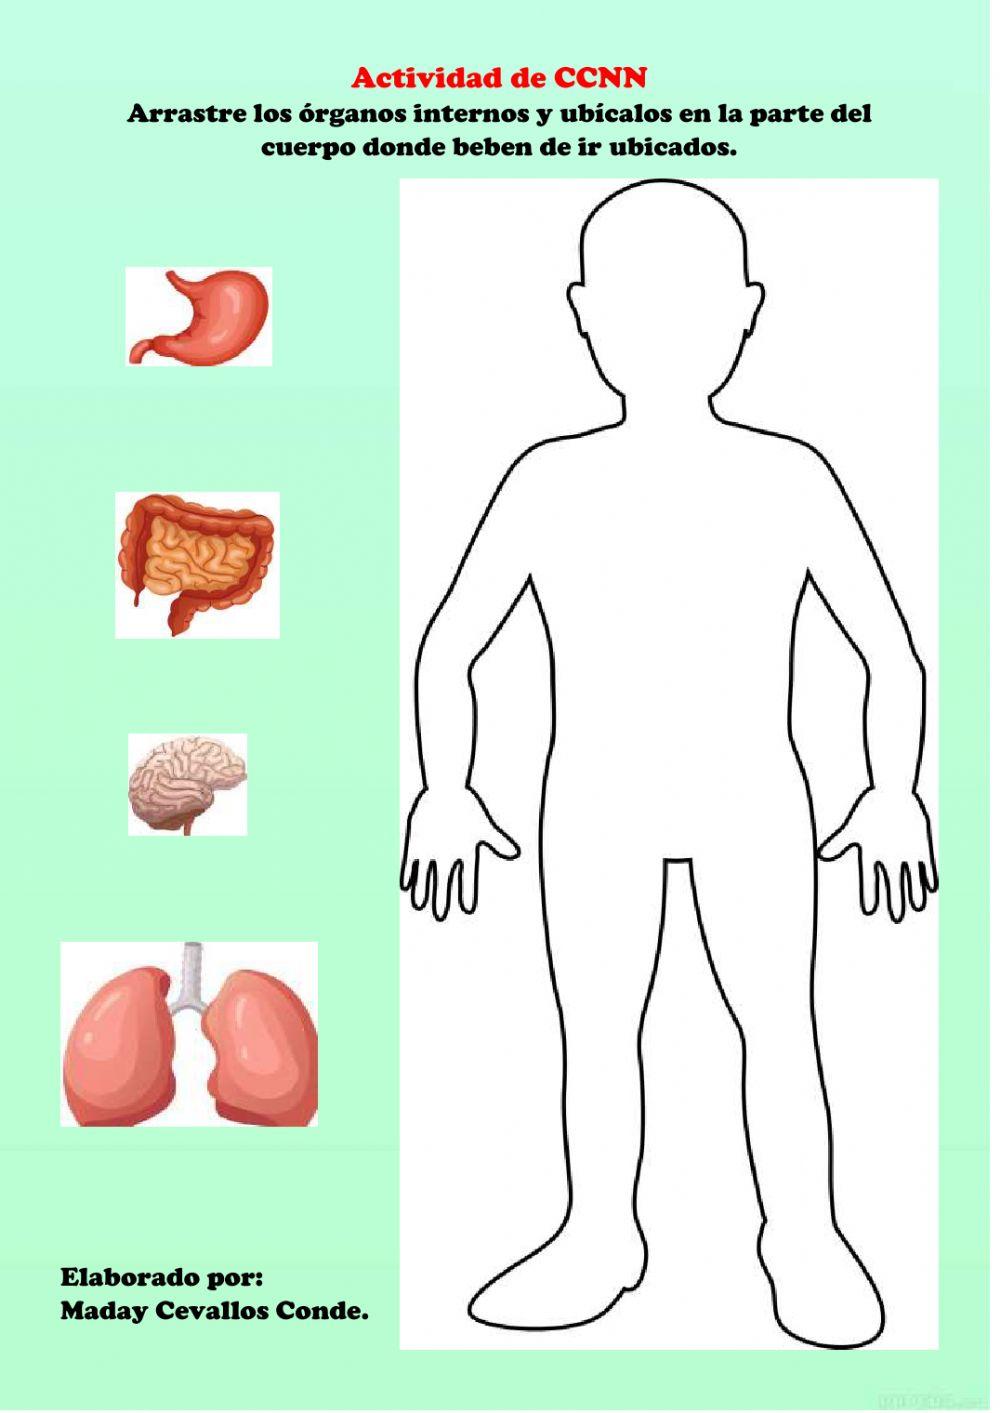 Los órganos internos del cuerpo humano.